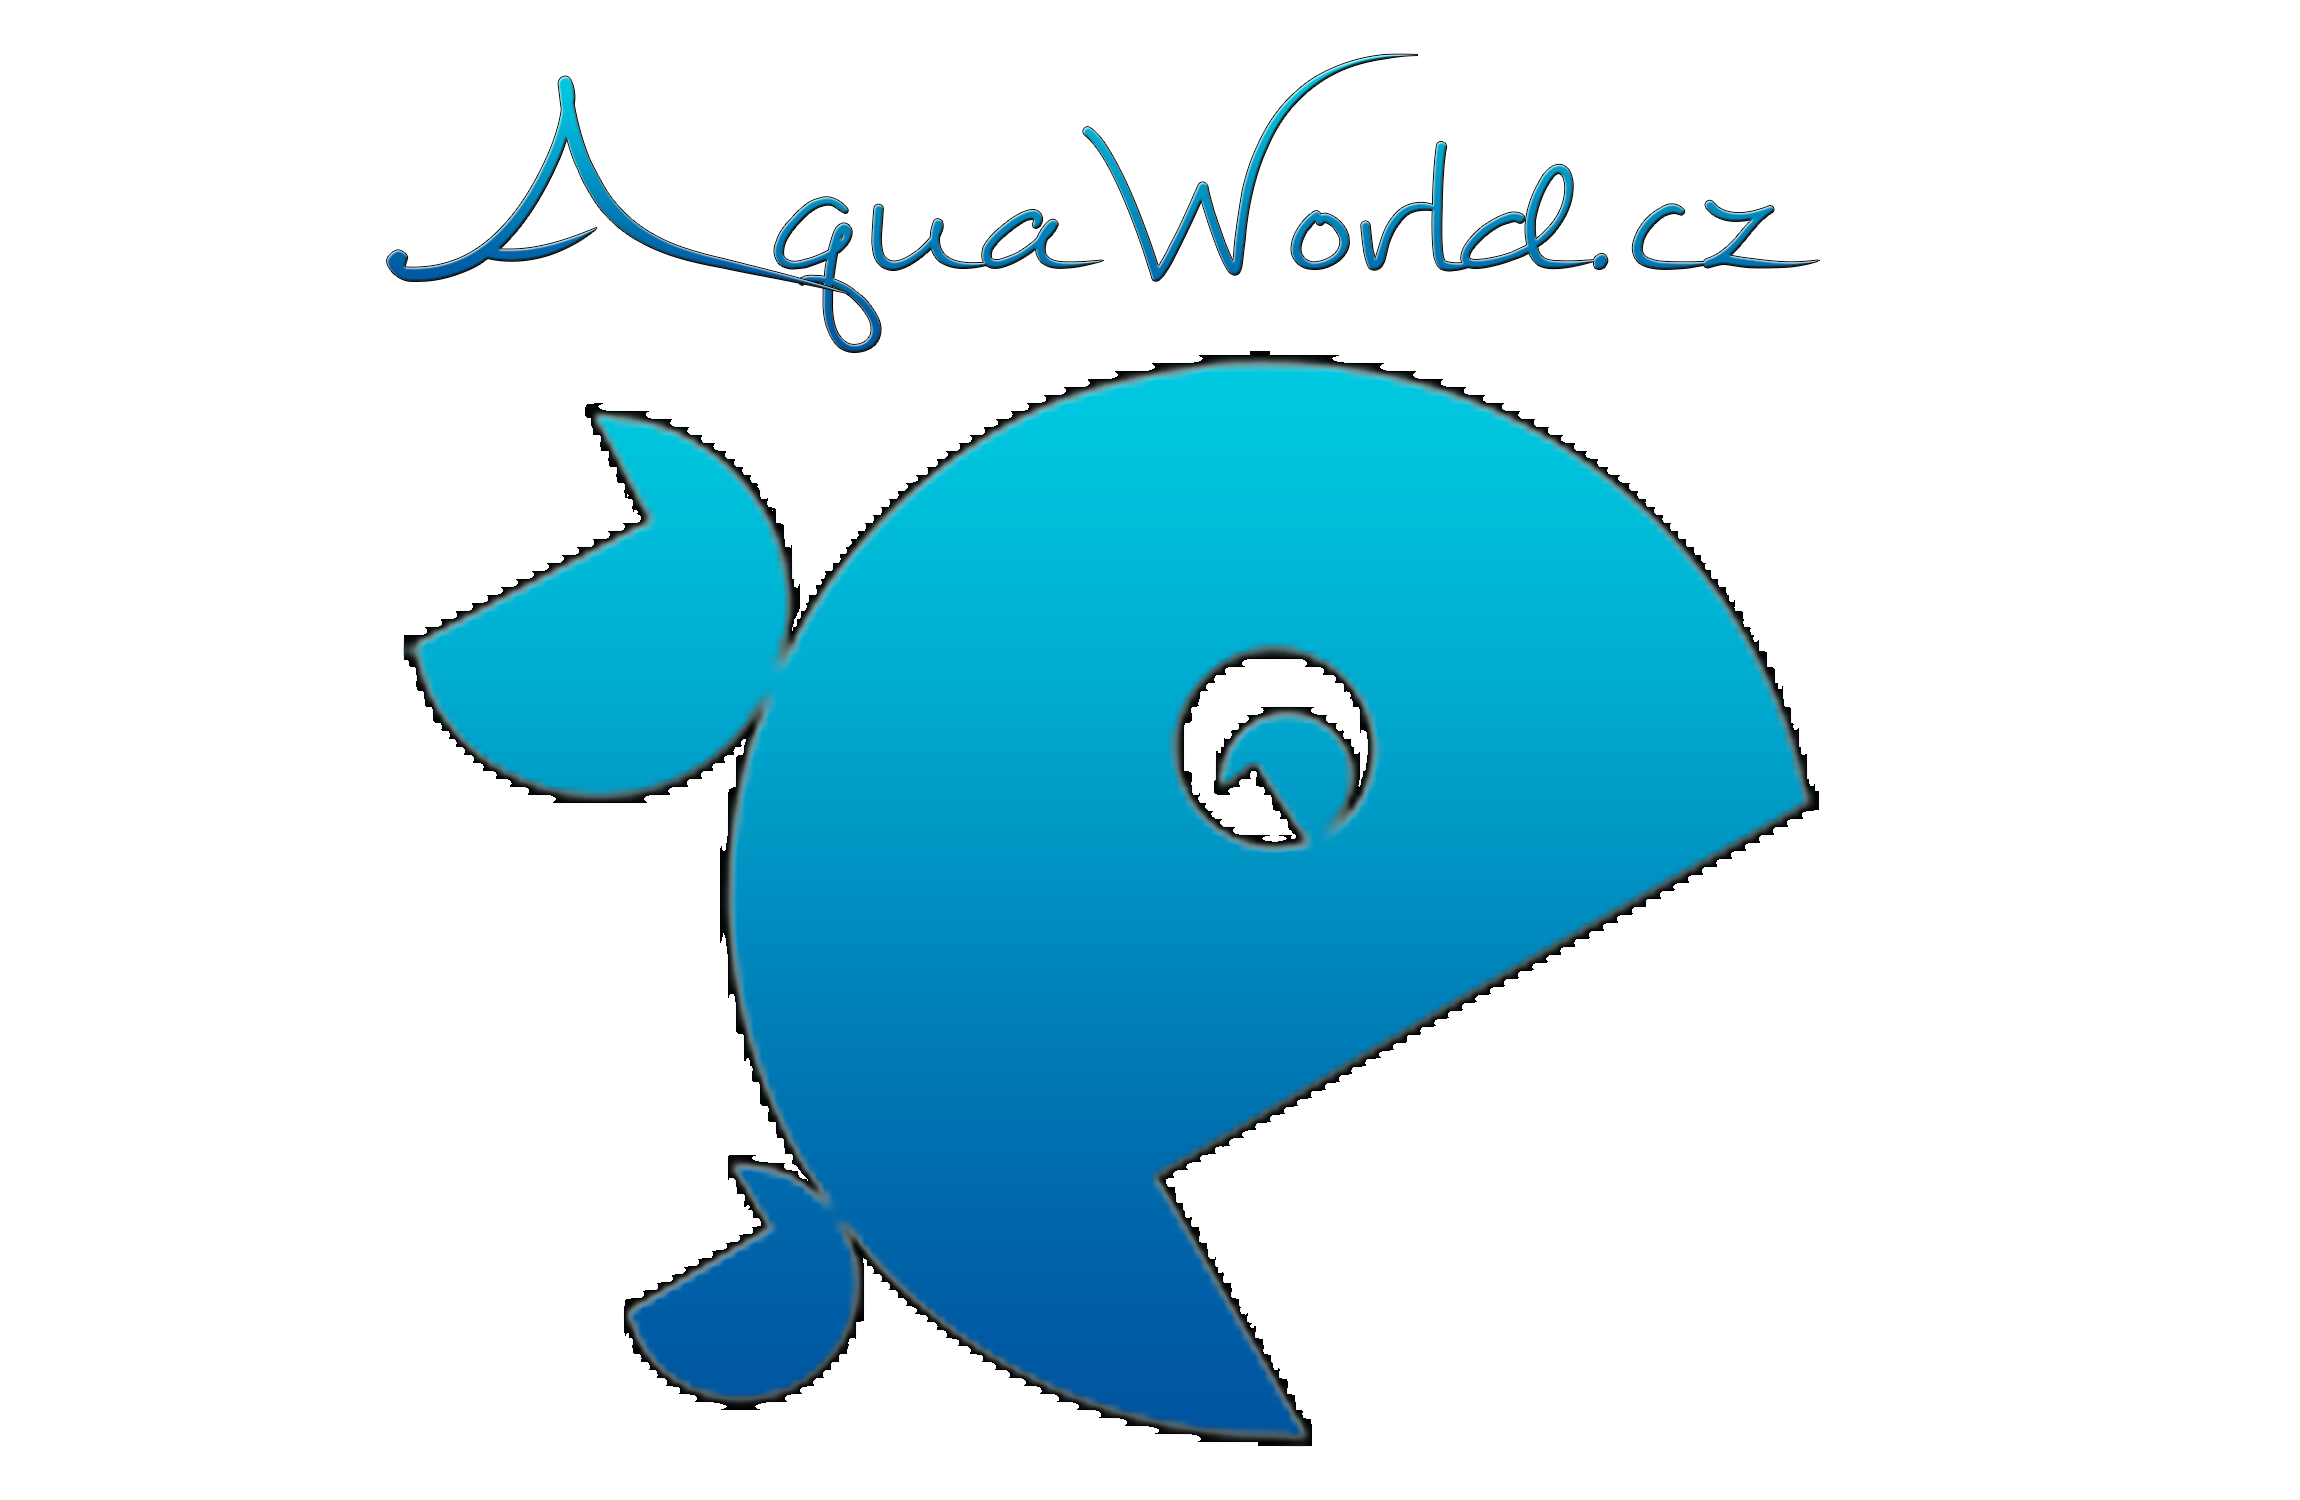 AquaWorld.cz